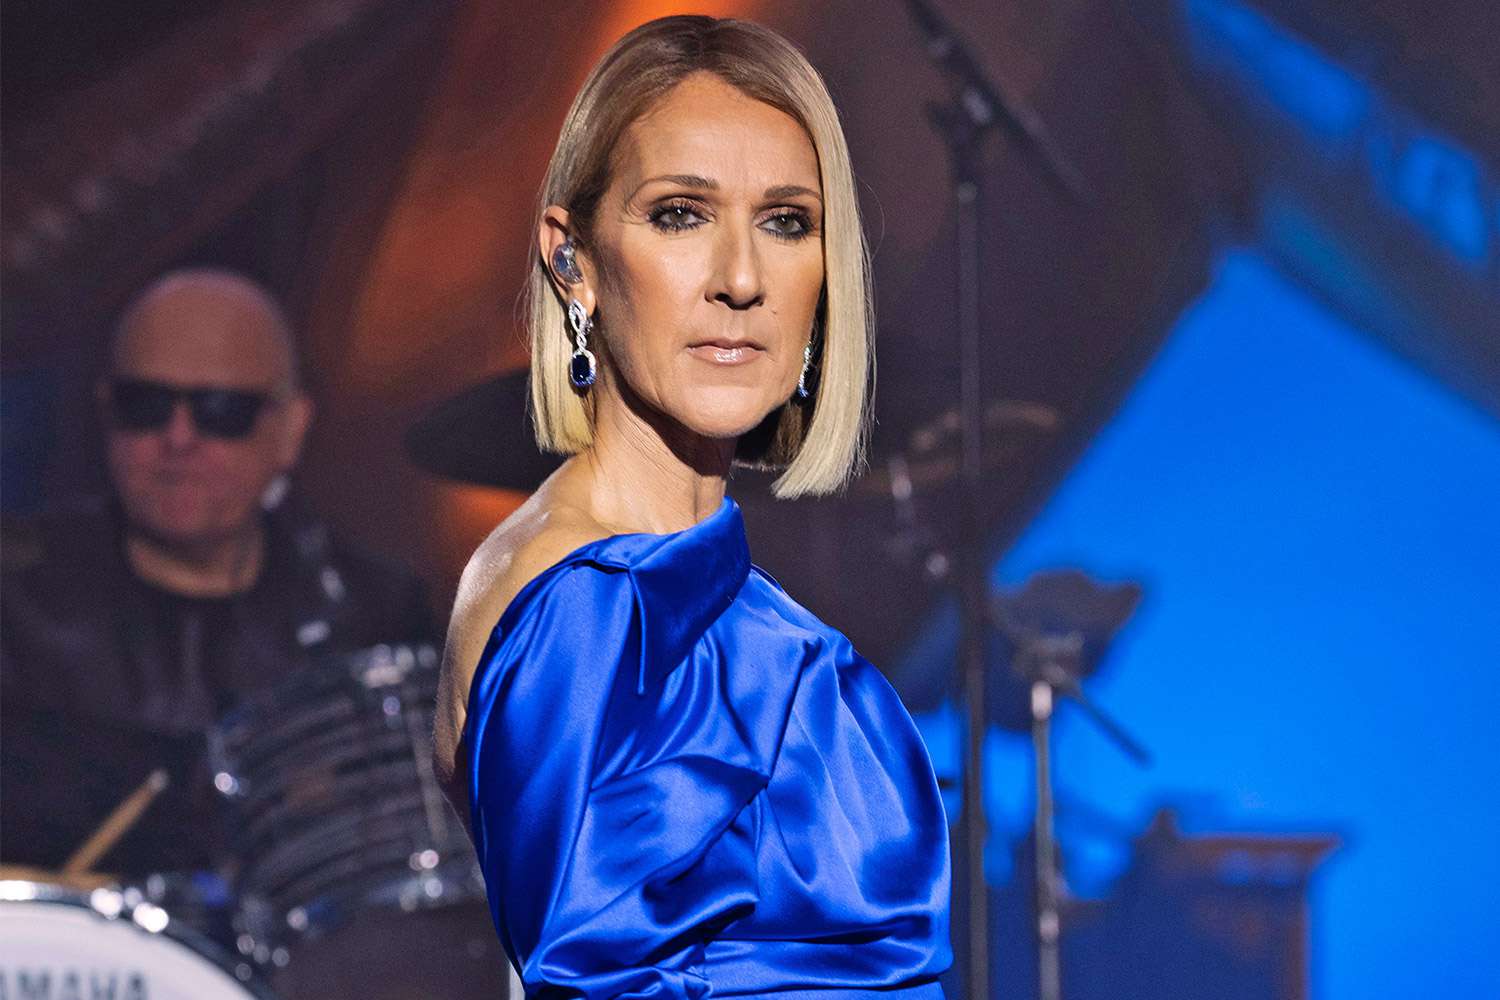 Celine Dion ho va anunciar plorant: la malaltia que ningú no esperava